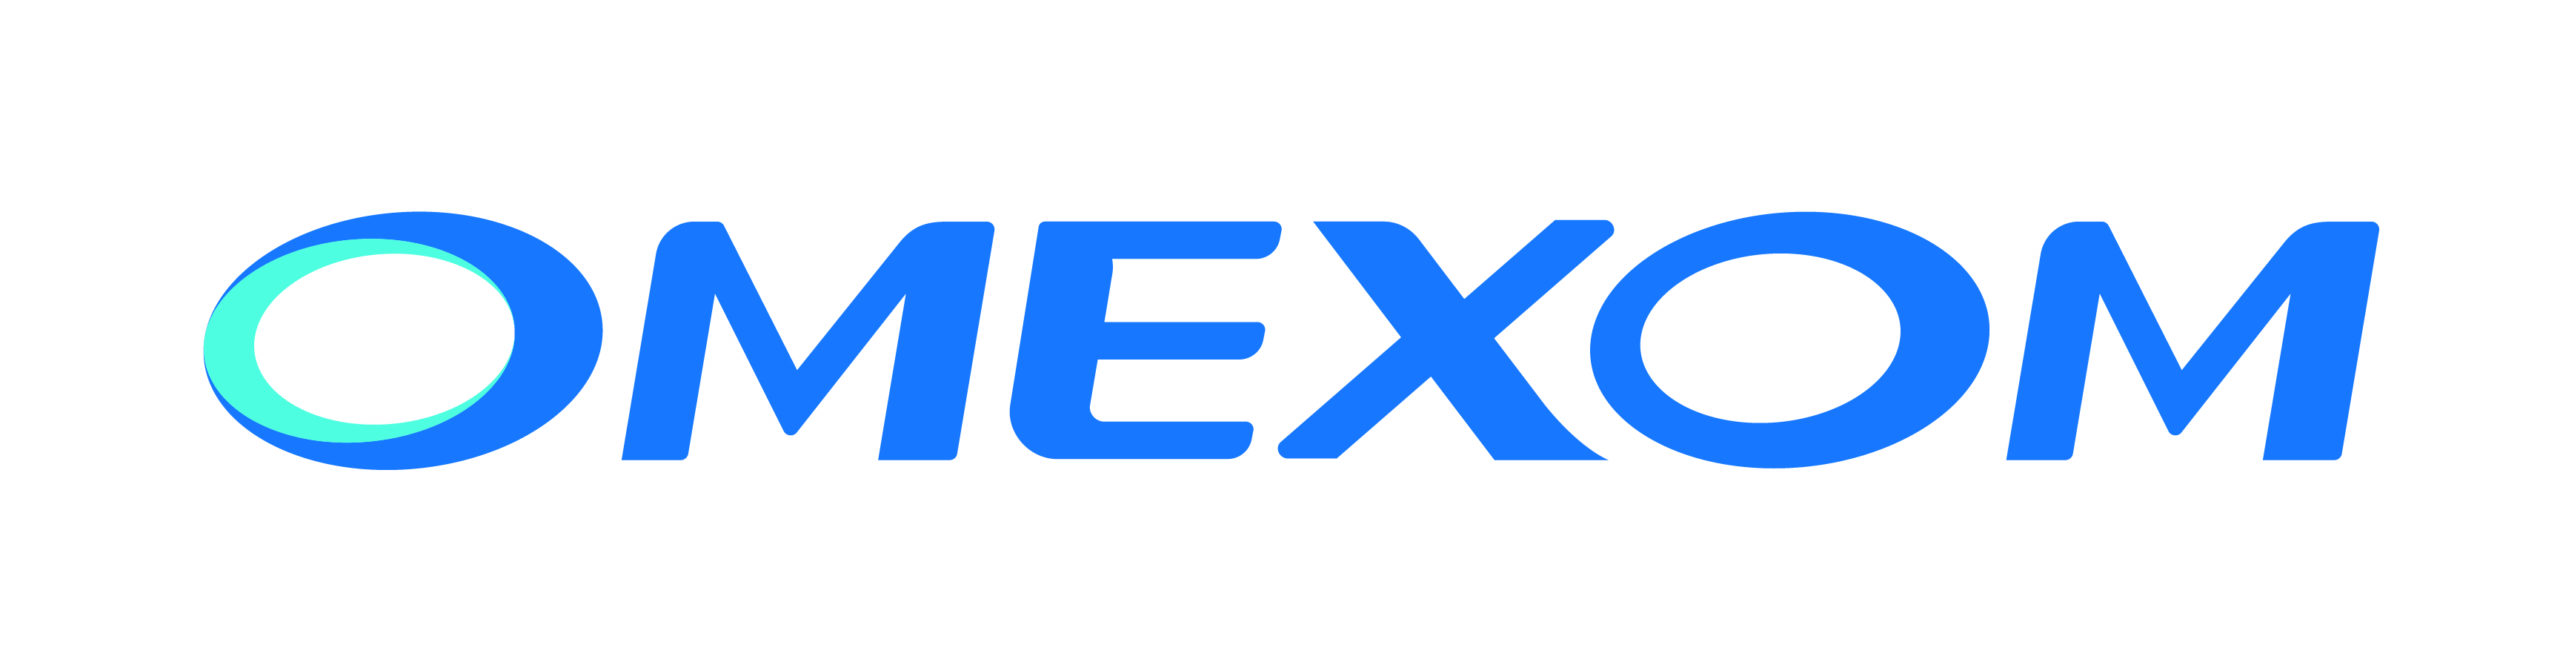 Omexom Logo